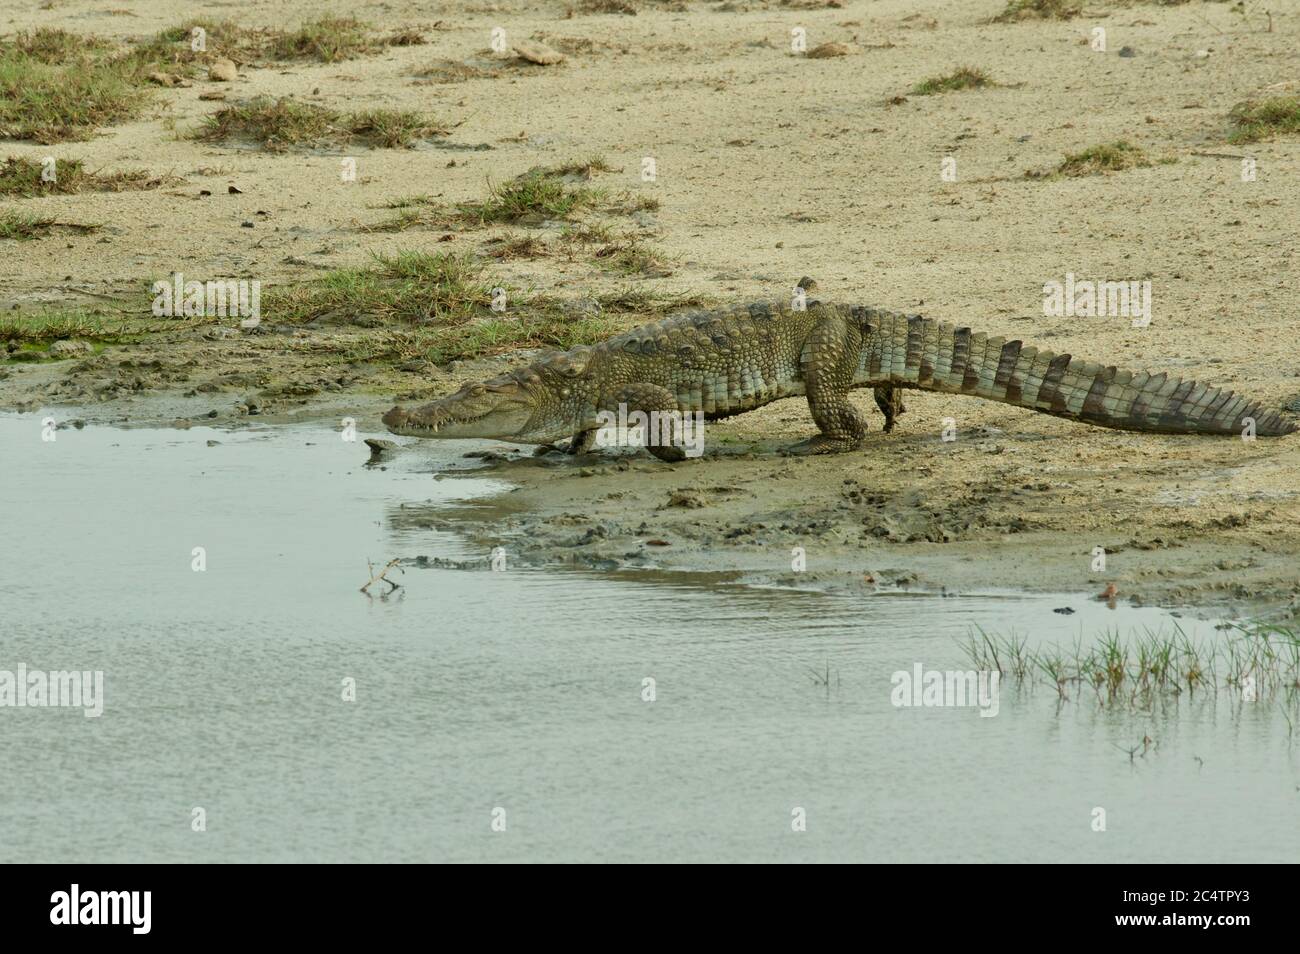 Un crocodile de mugger (Crocodylus palustris) sur le point d'entrer dans l'eau dans le parc national de Yala, Sri Lanka Banque D'Images